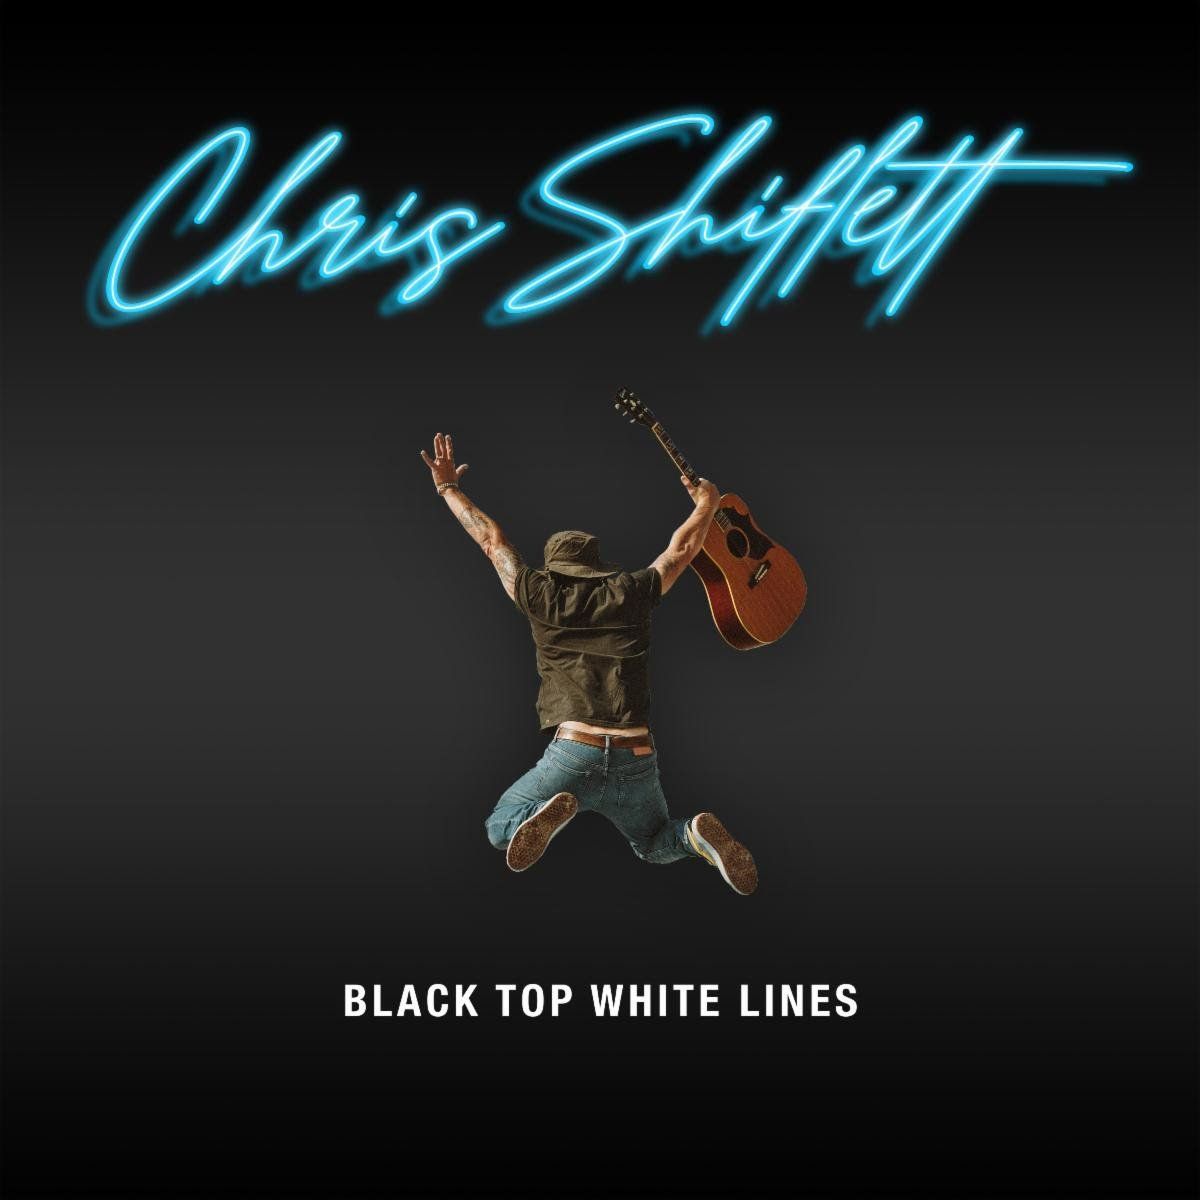 Chris Shiflett Releases Video for "Black Top, White Lines"